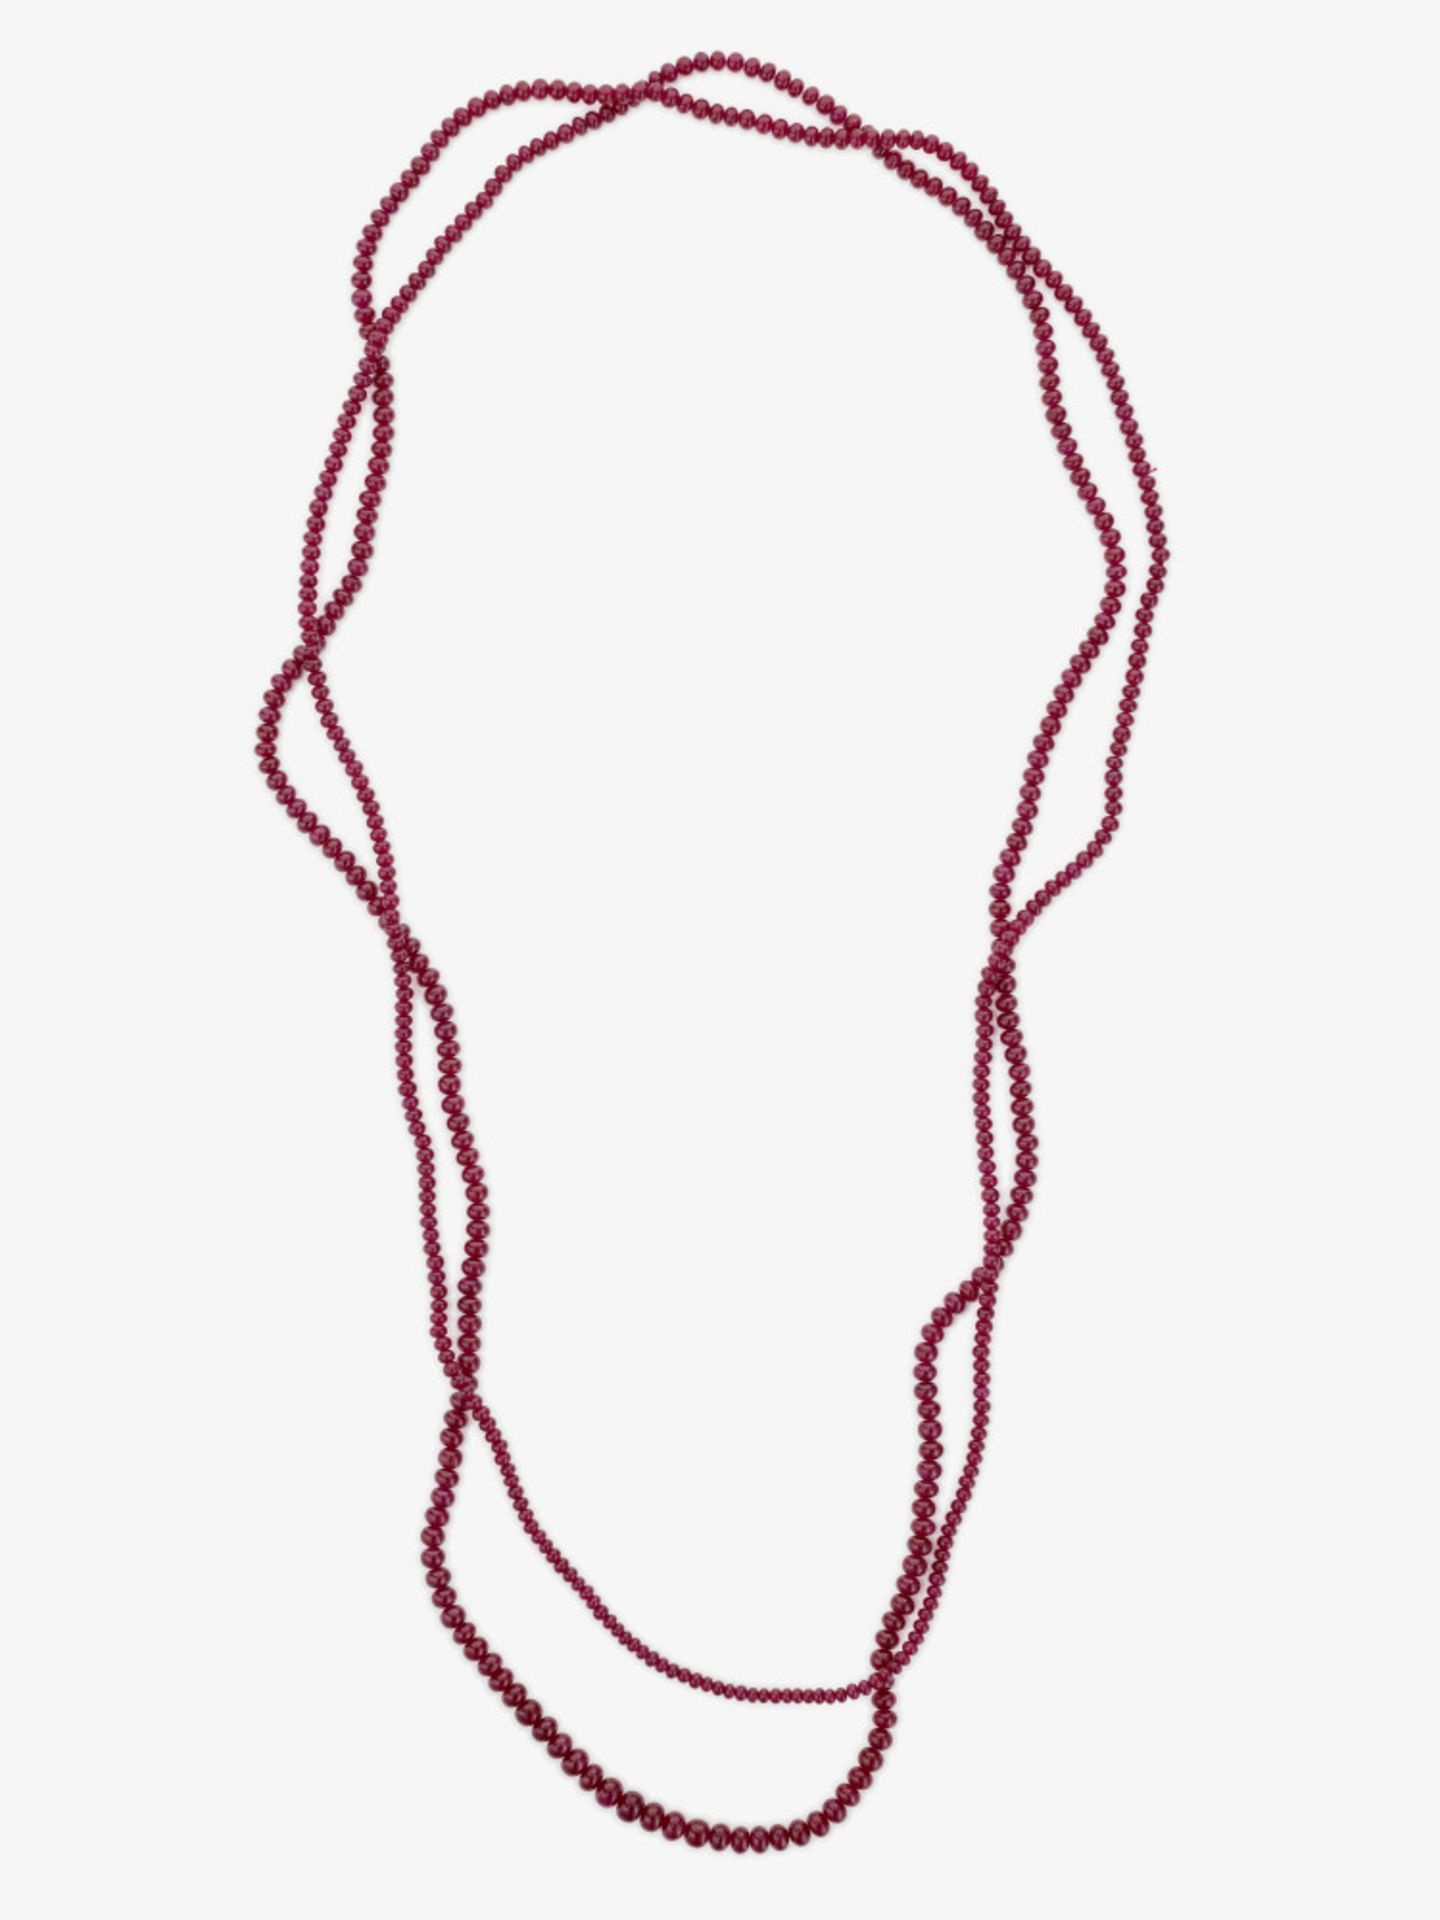 A sautoir: rare Burmese old mine ruby bead necklace - Image 3 of 4